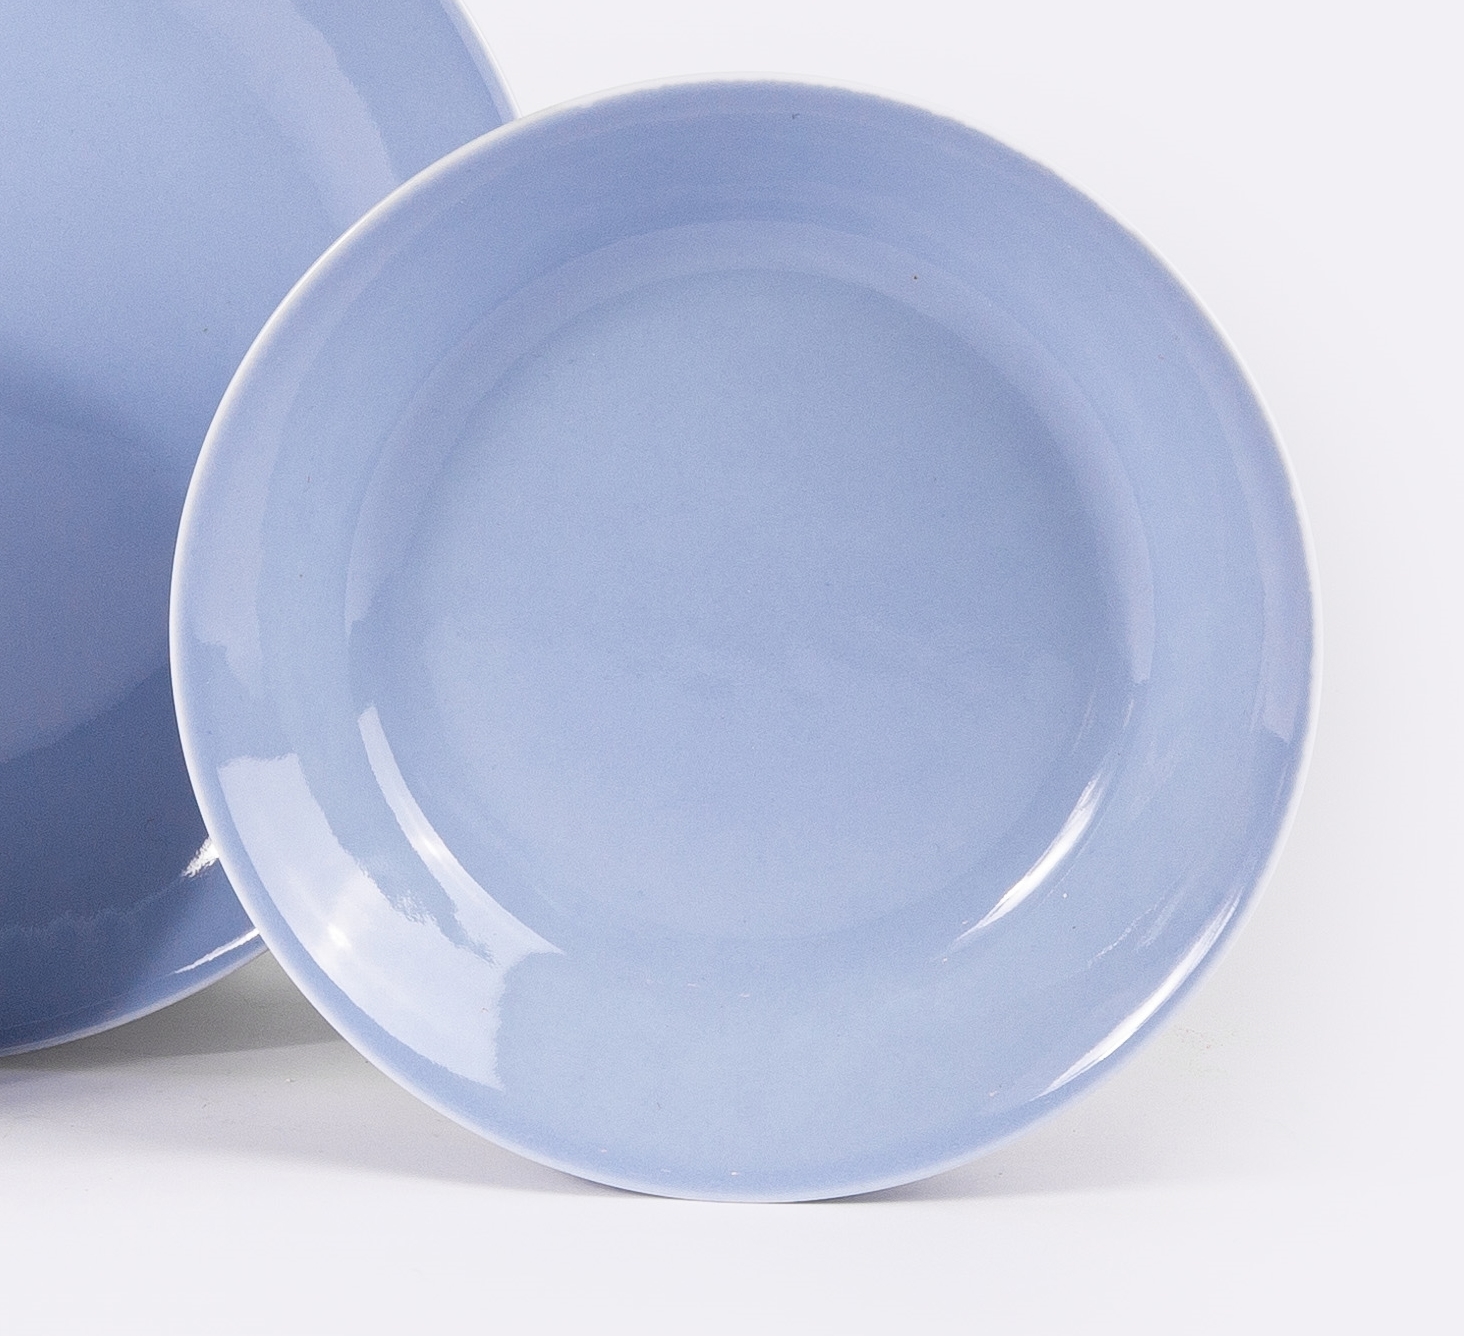 L'assiette creuse ronde en porcelaine - Bleu pastel - Intemporelle